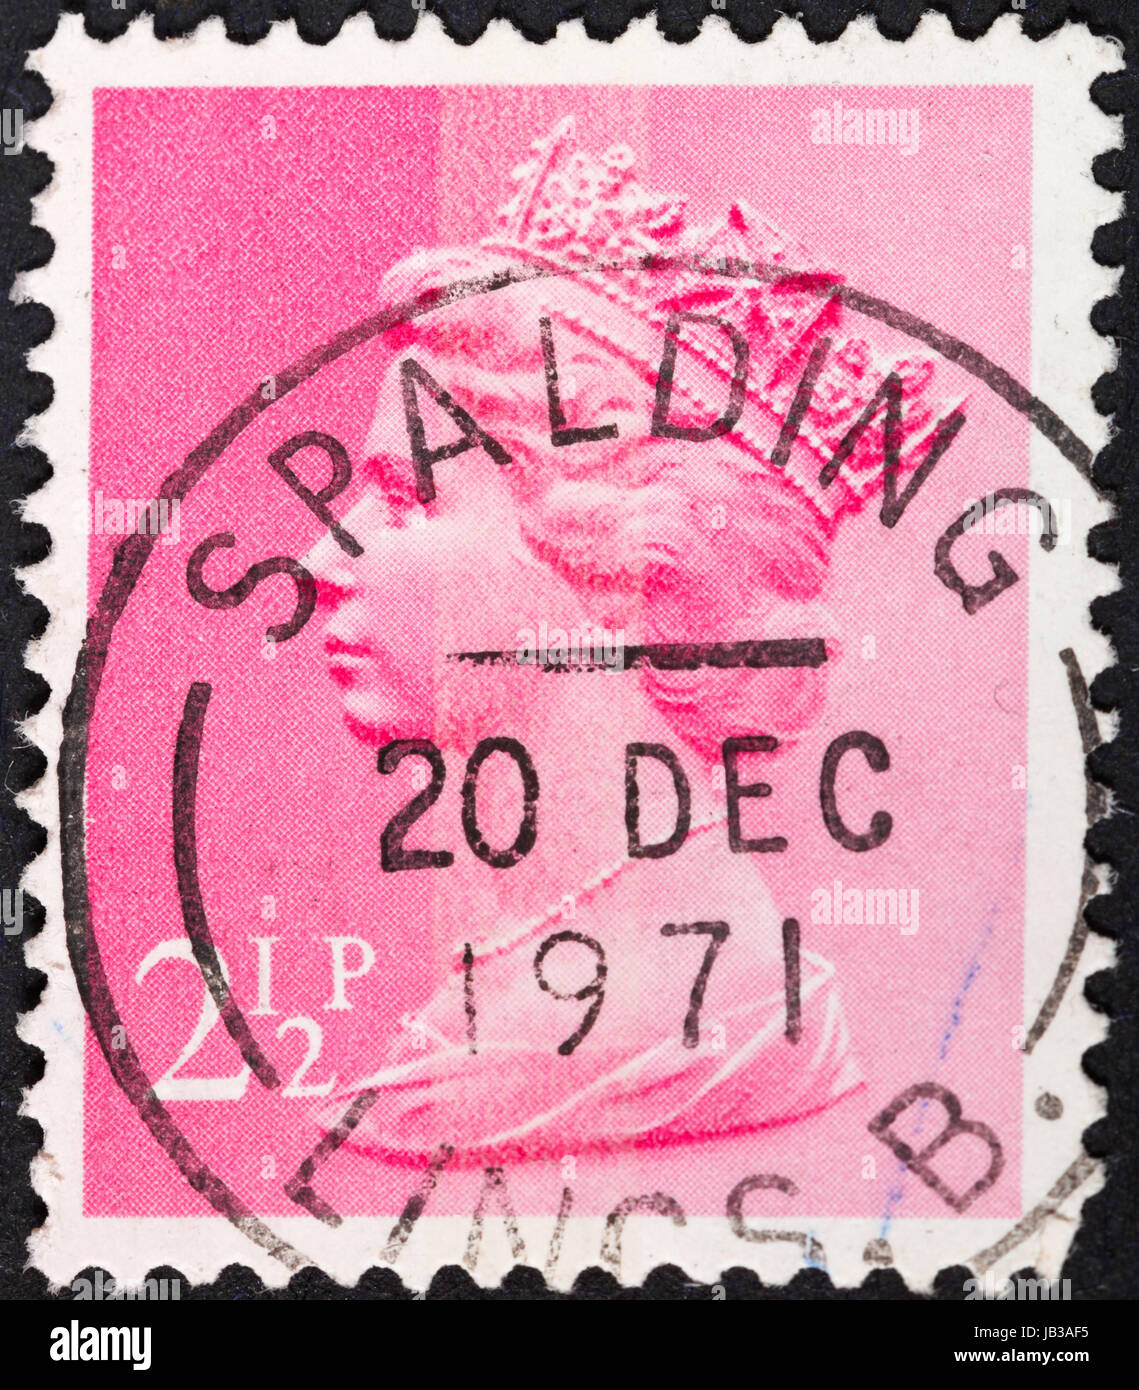 Reino Unido - circa 1972: un sello impreso en el Reino Unido muestra a la Reina Elizabeth en rosa, circa 1972 Foto de stock